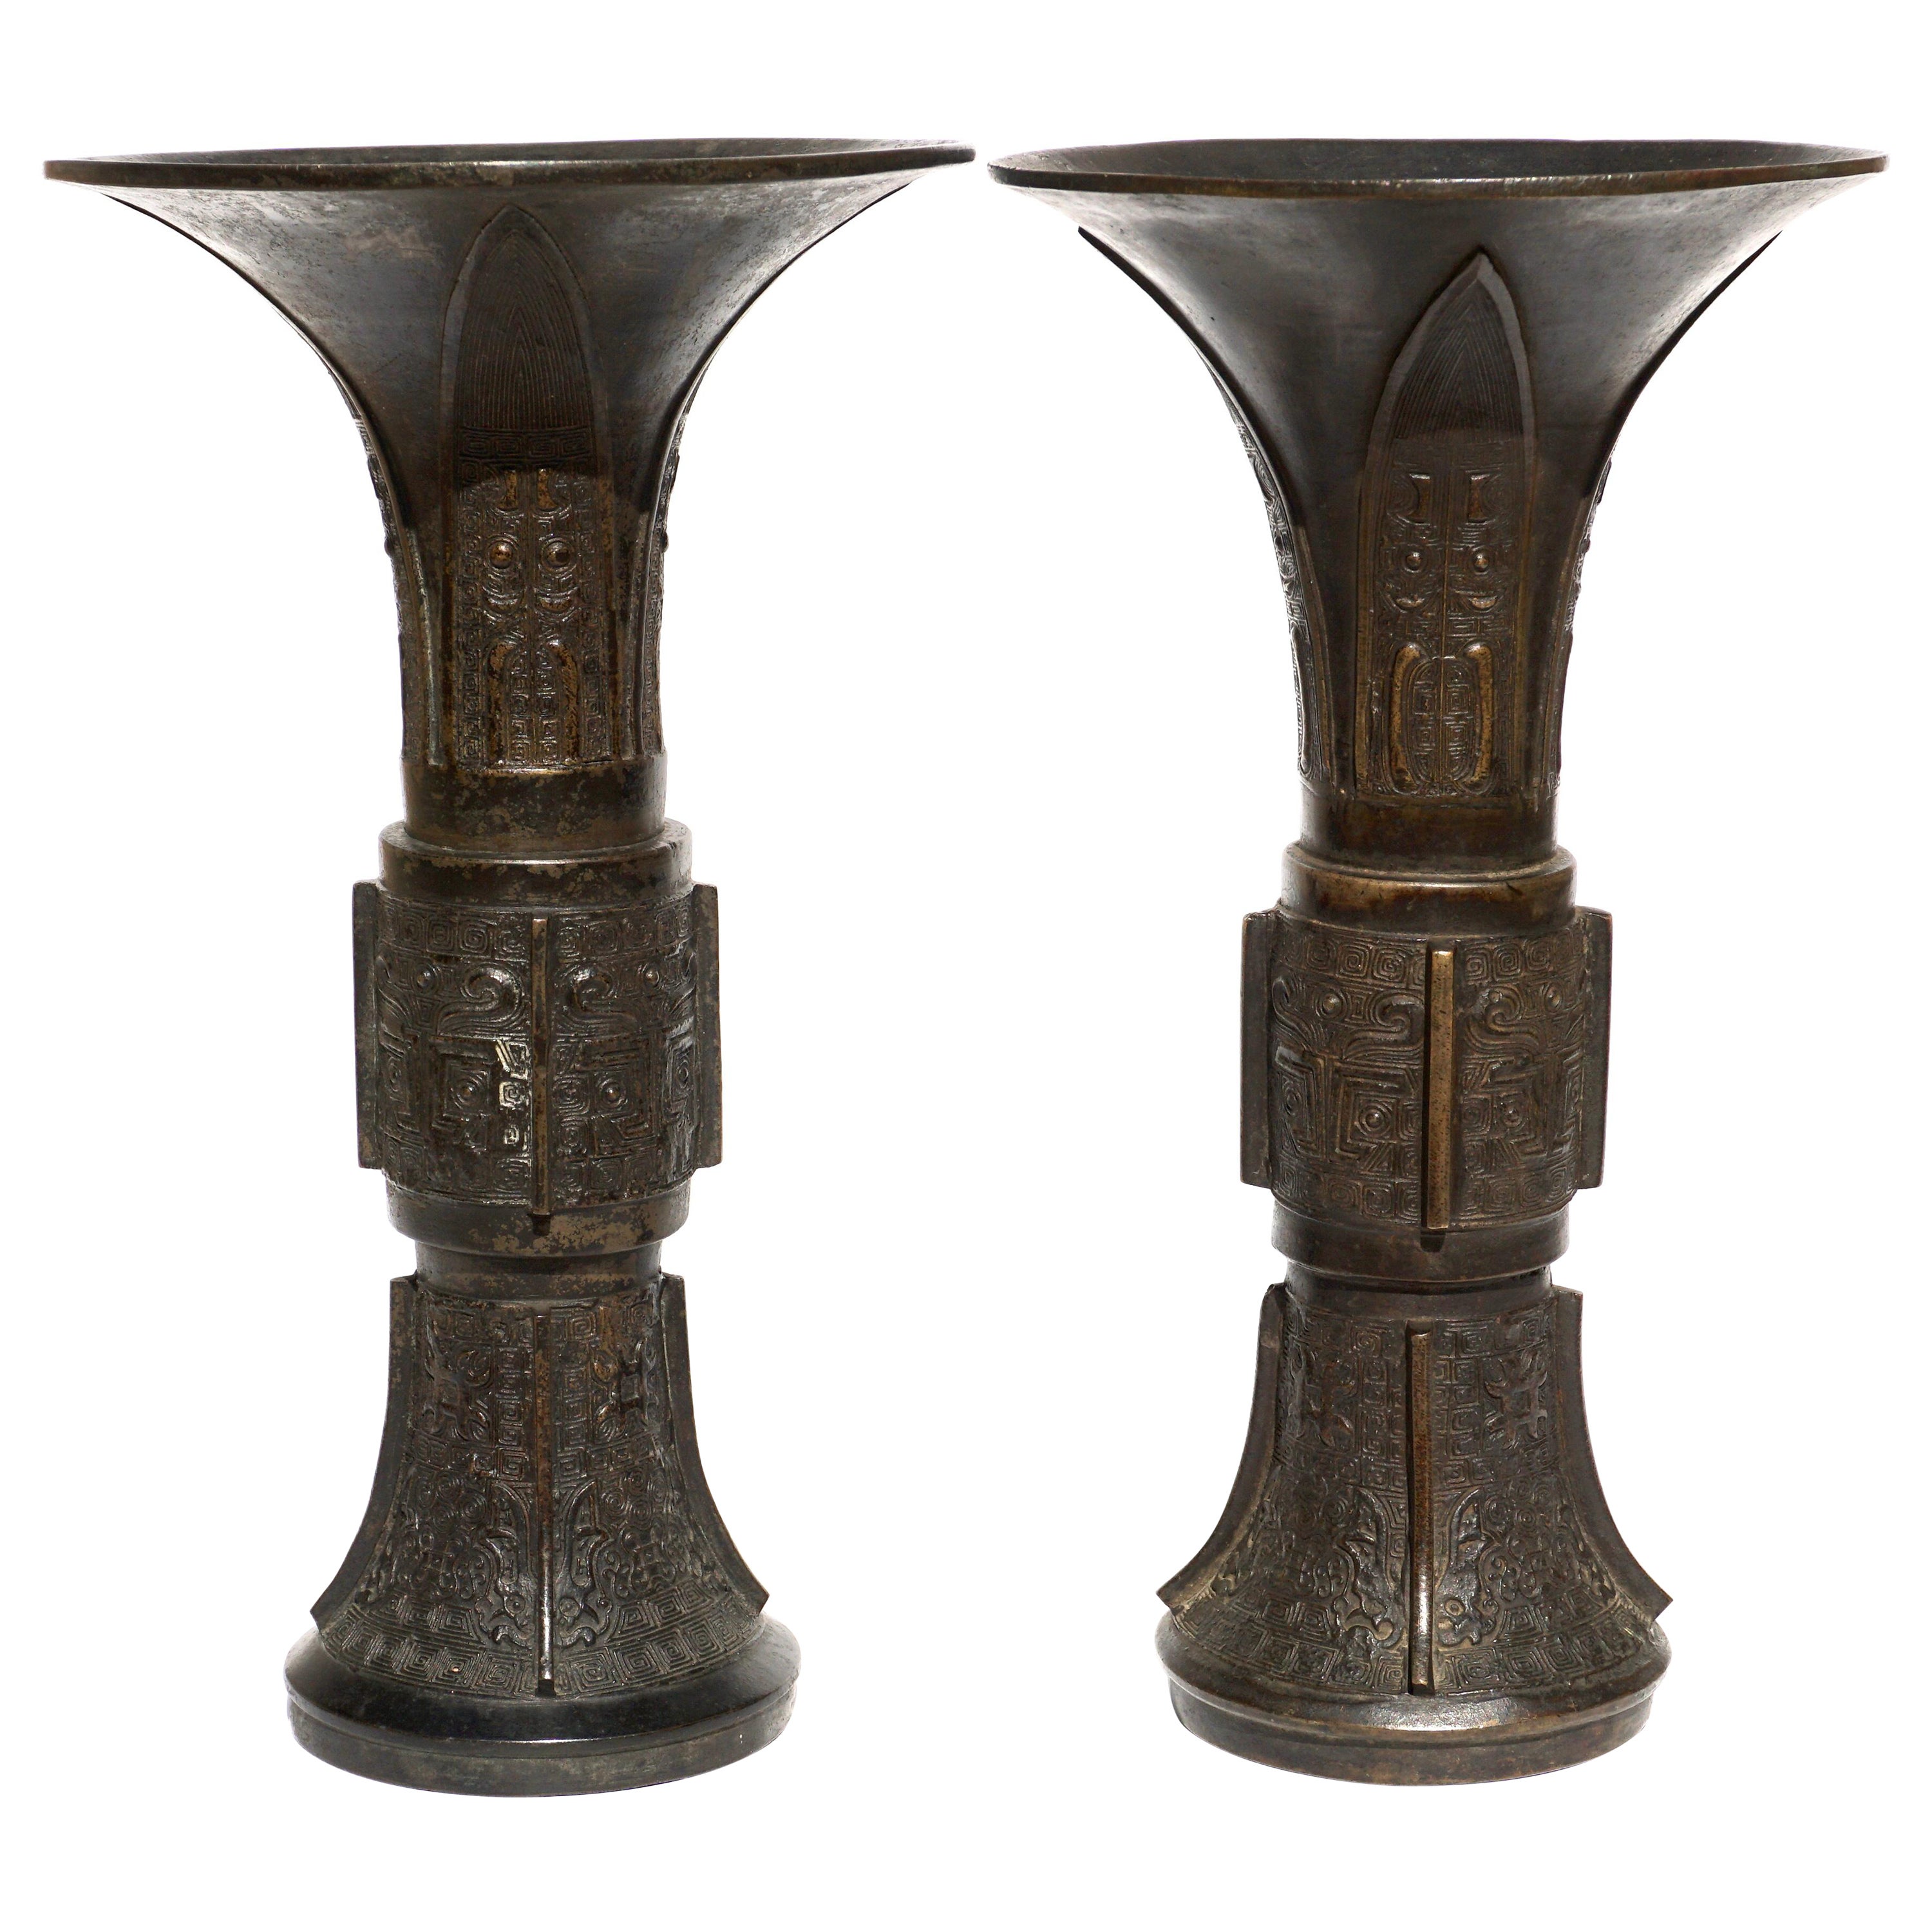 Paar chinesische archaische Gu-Vasen aus Bronze aus dem späten Ming-Stil des 18. Jahrhunderts